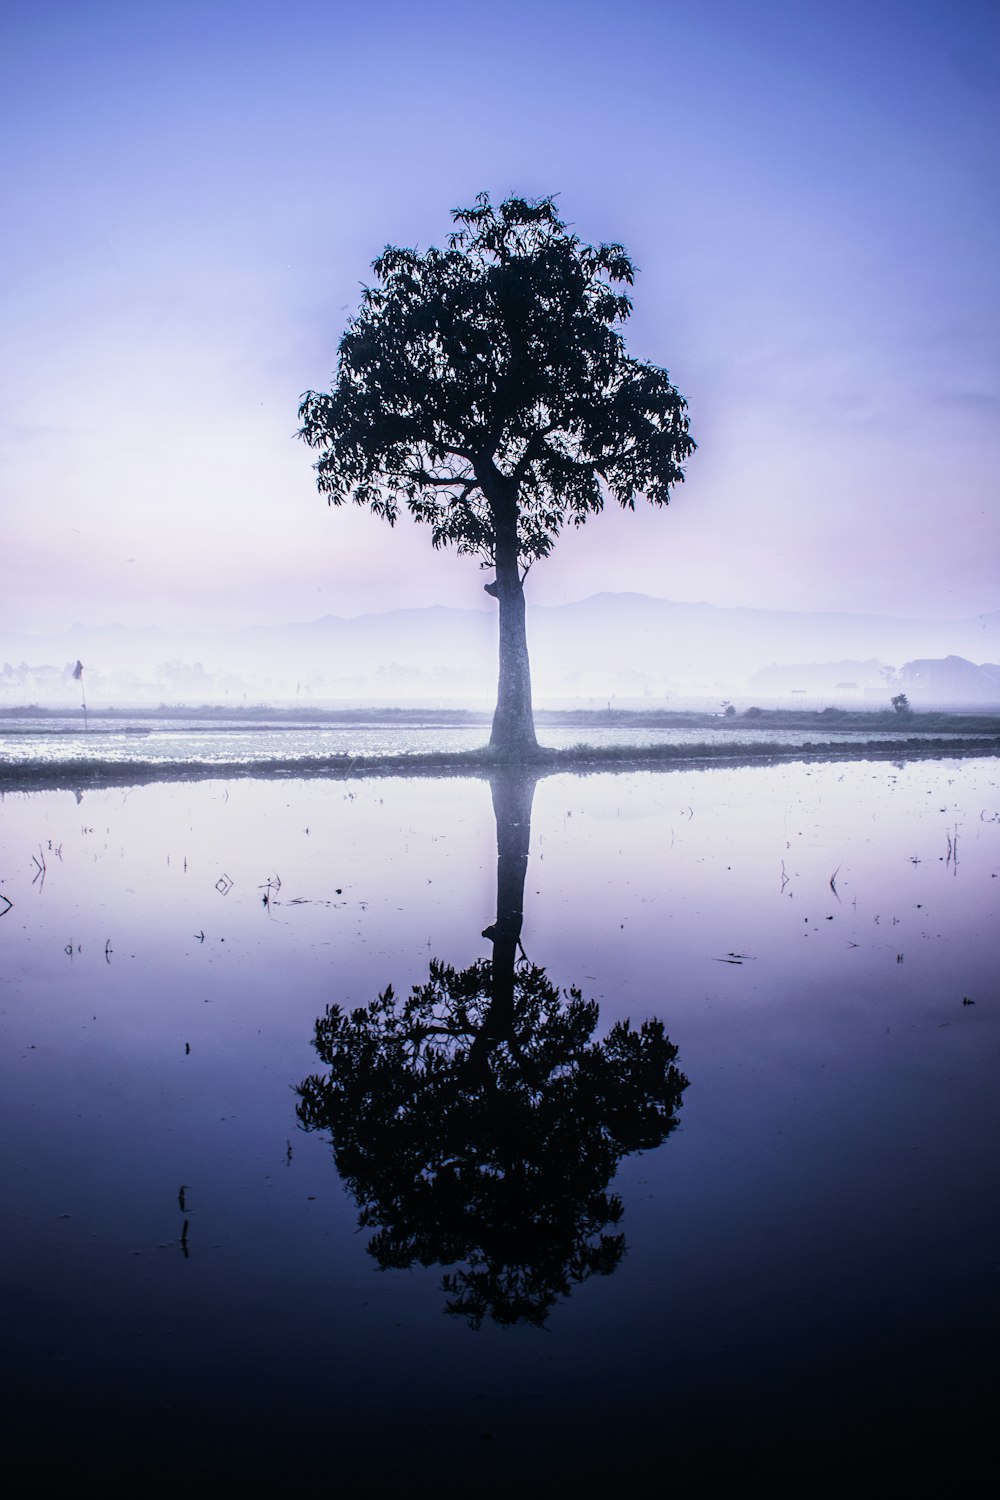 tree beside body of water